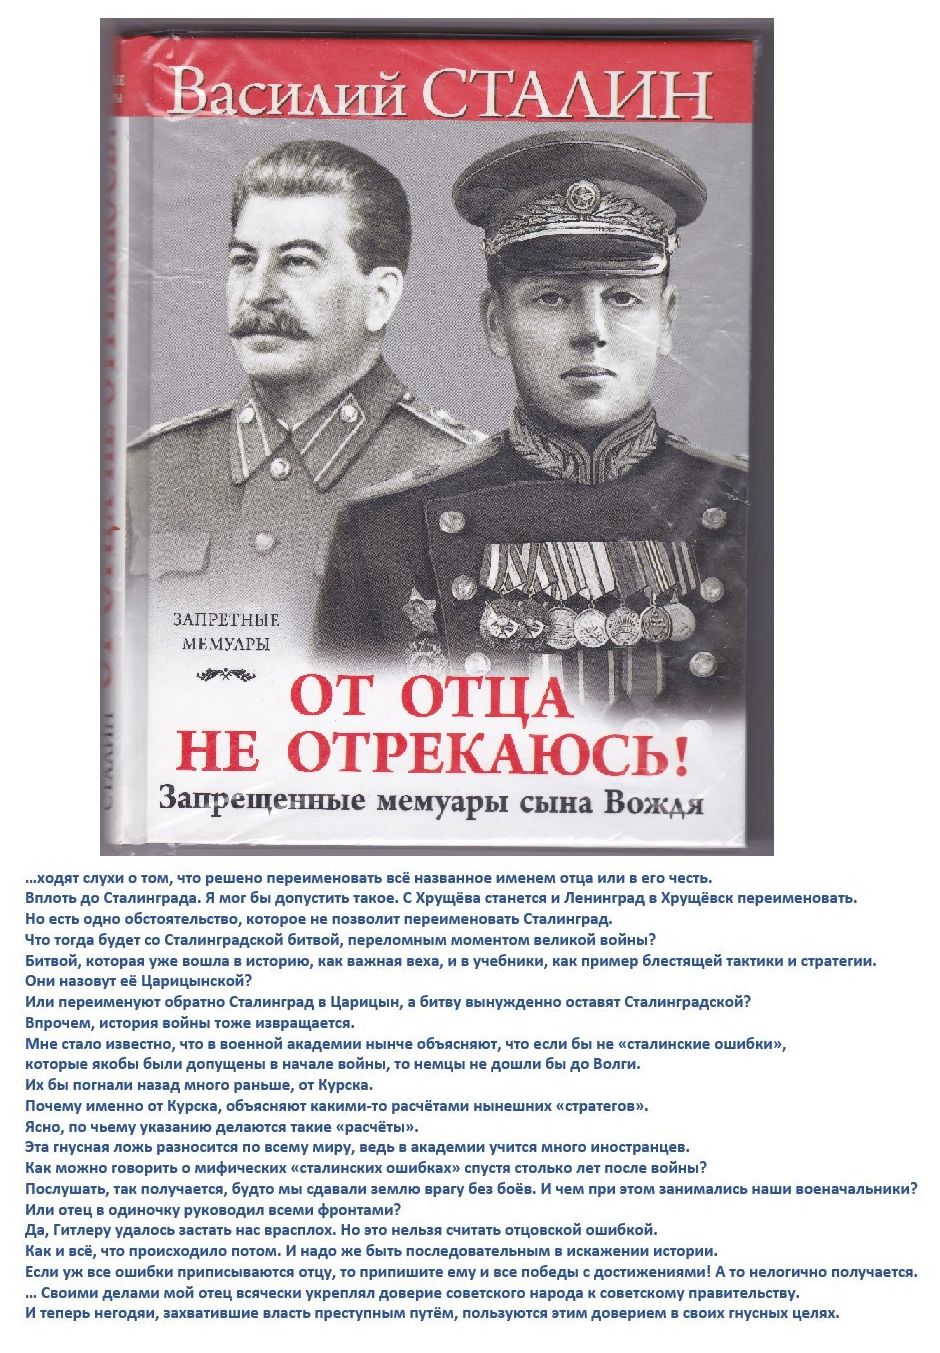 Награды Василия Сталина